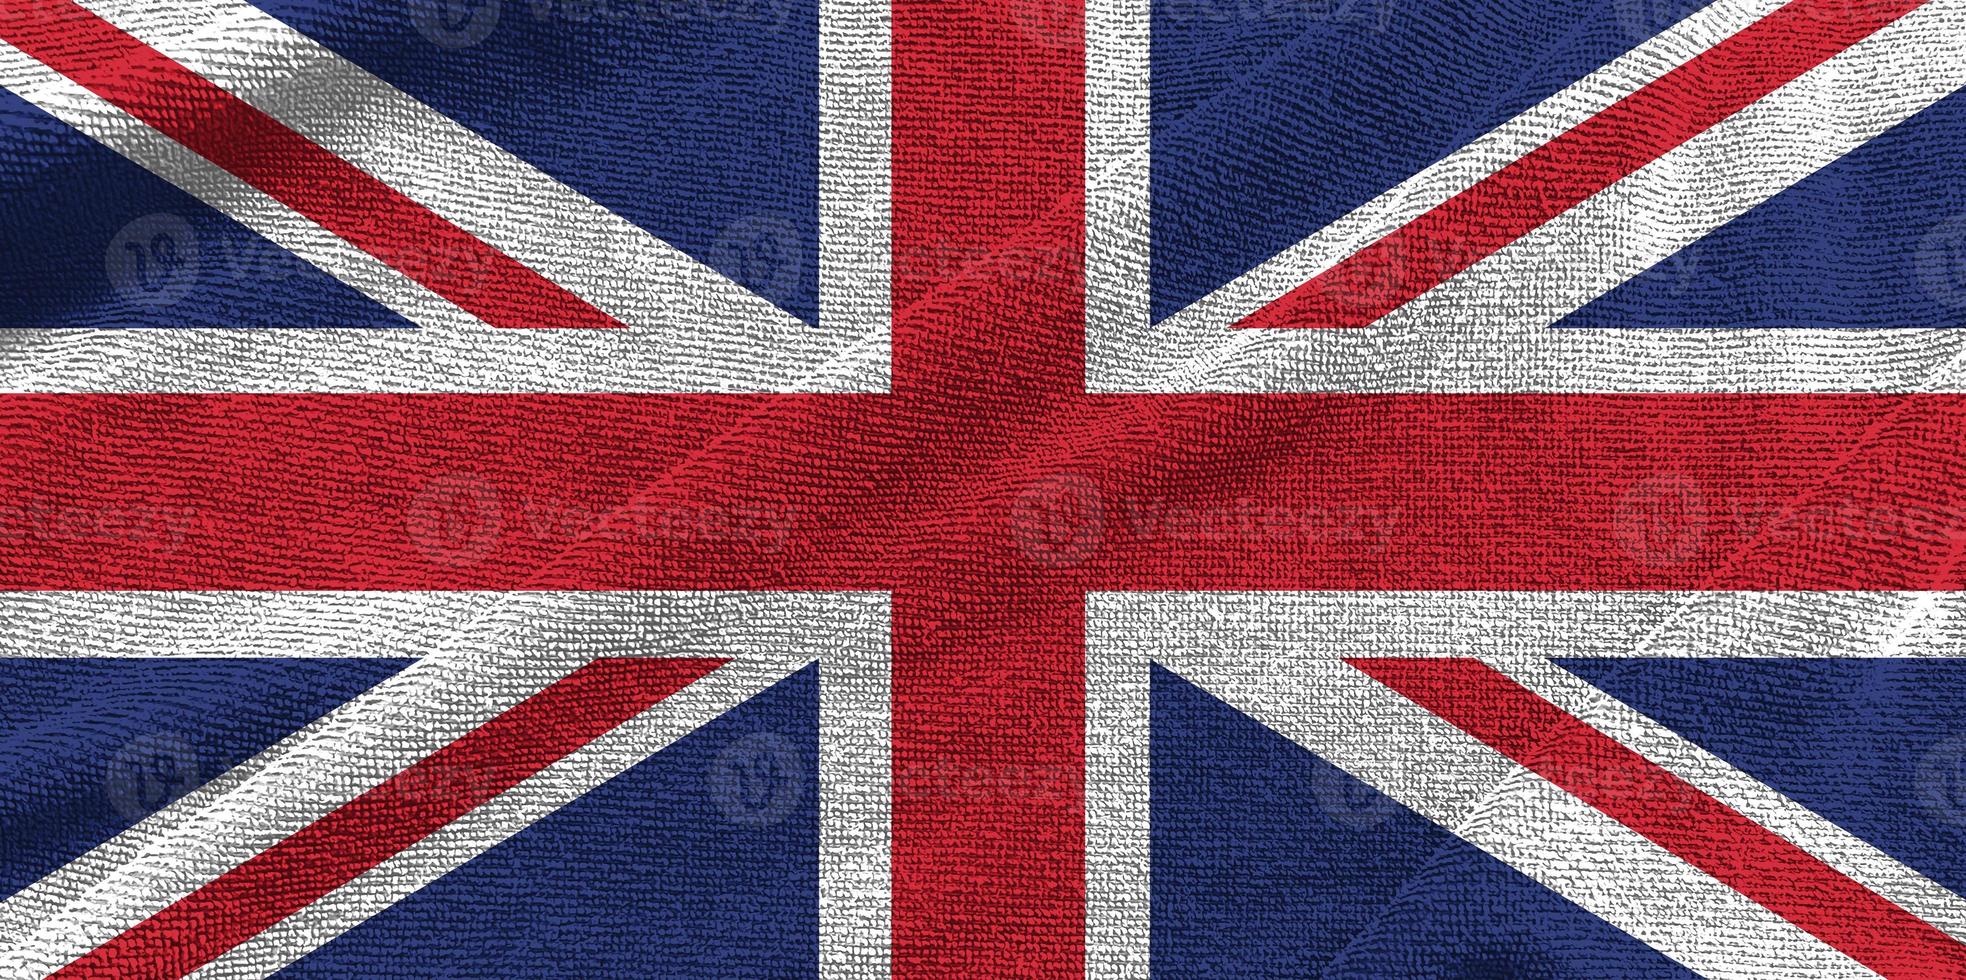 Onda de la bandera del Reino Unido aislada en png o fondo transparente, símbolos del Reino Unido, plantilla para banner, tarjeta, publicidad, promoción, comercial de televisión, anuncios, diseño web, ilustración foto